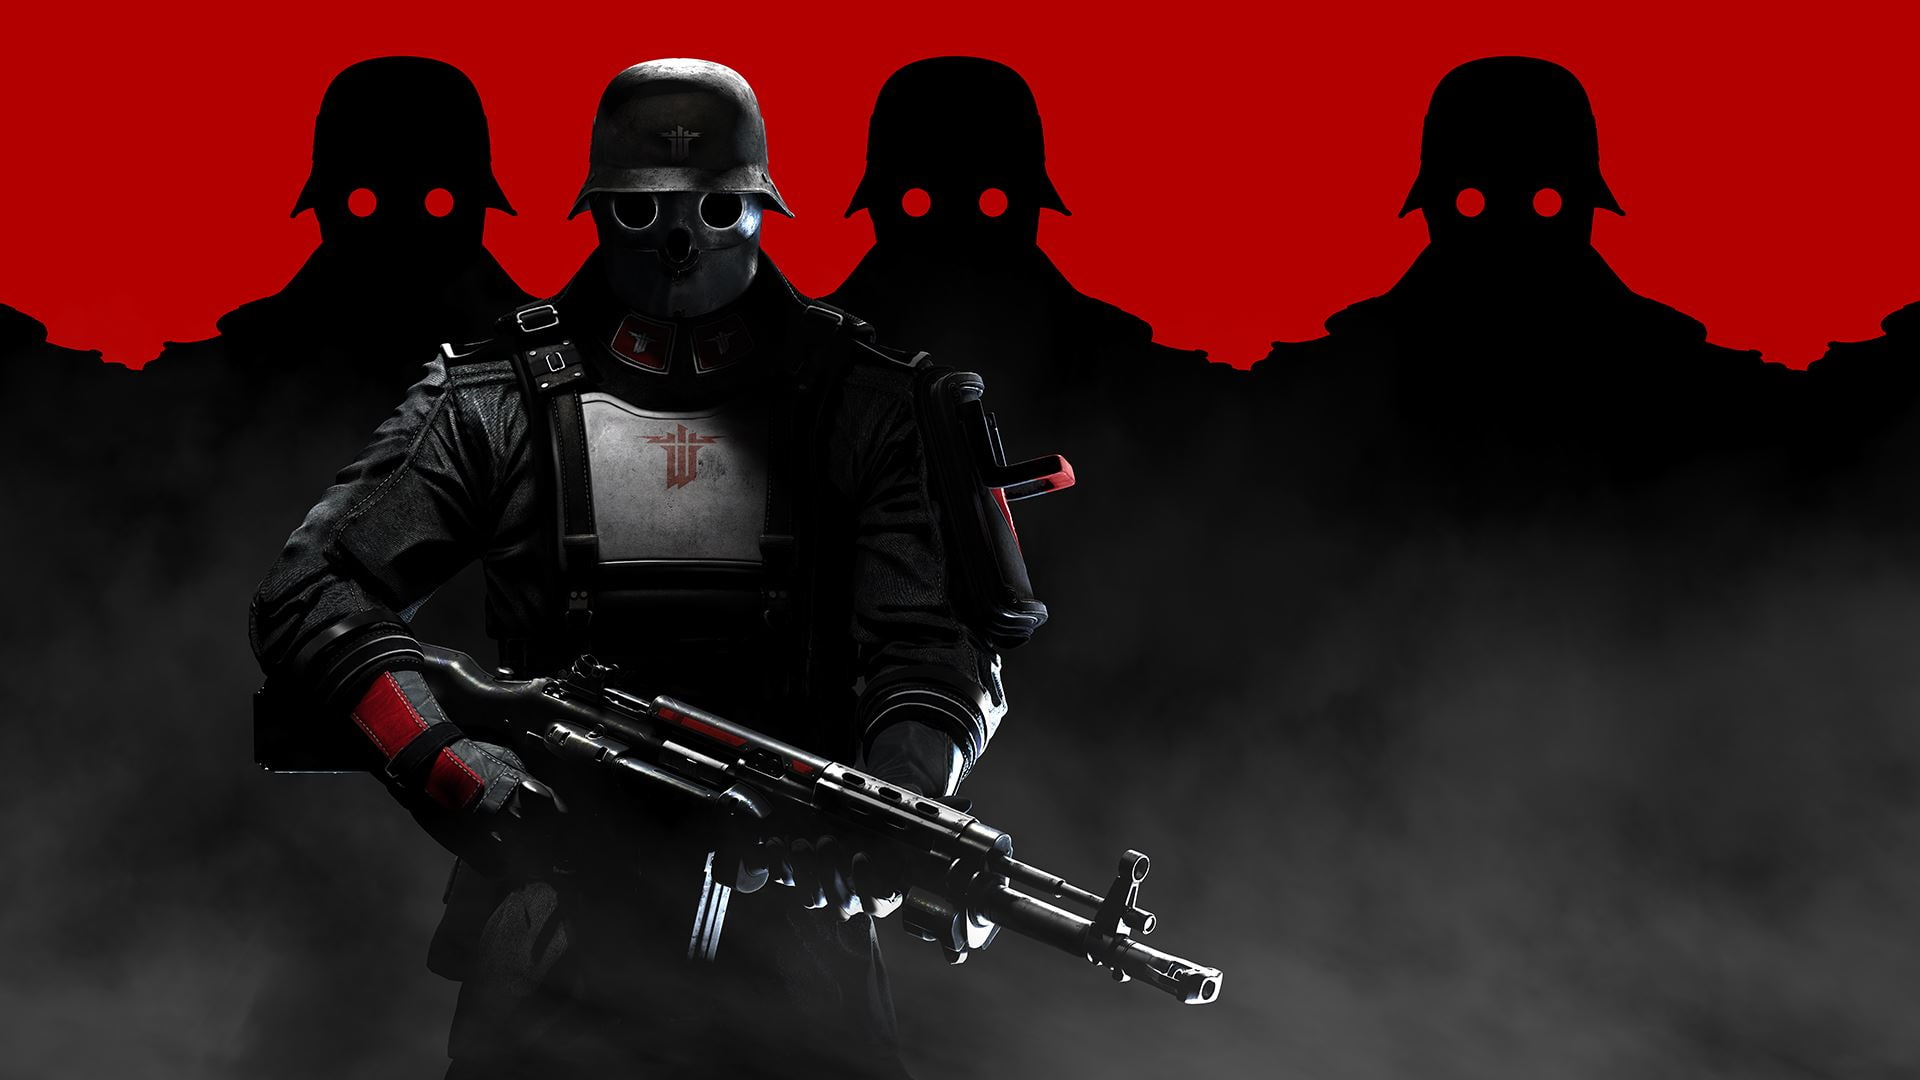 Wolfenstein, Wolfenstein: The New Order